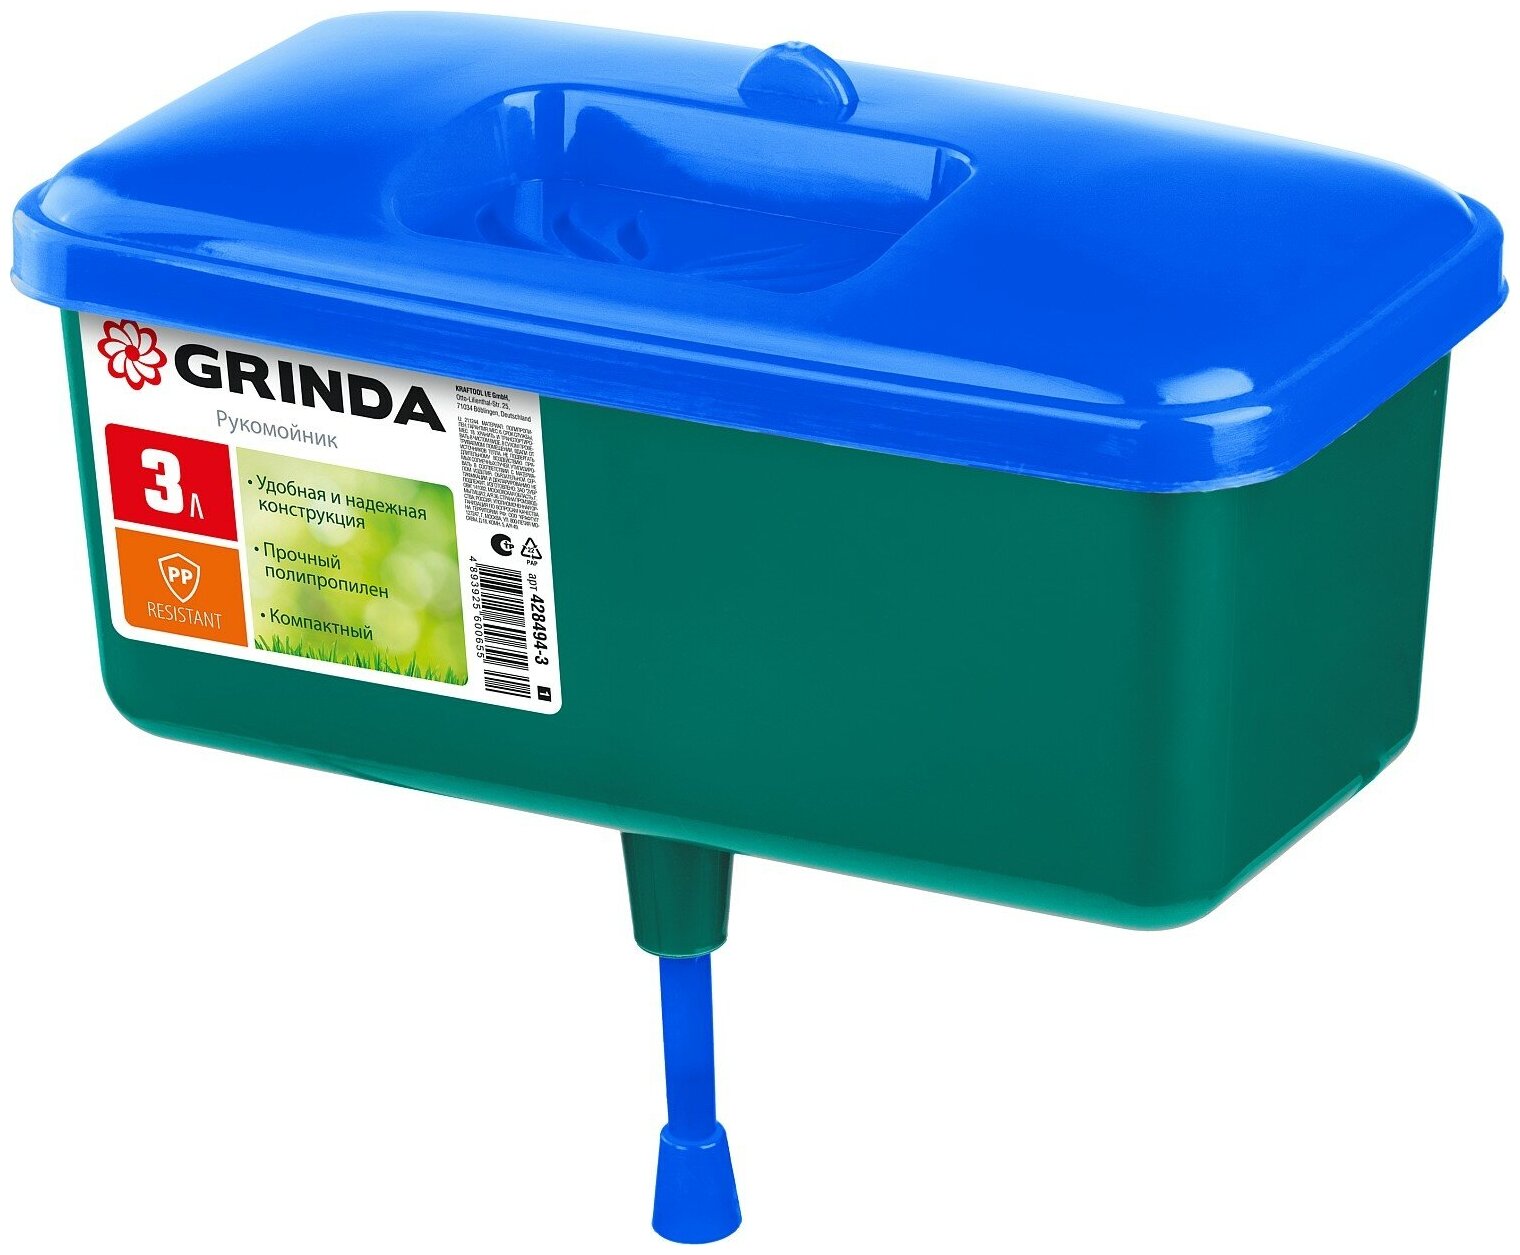 Рукомойник GRINDA 3л пластиковый